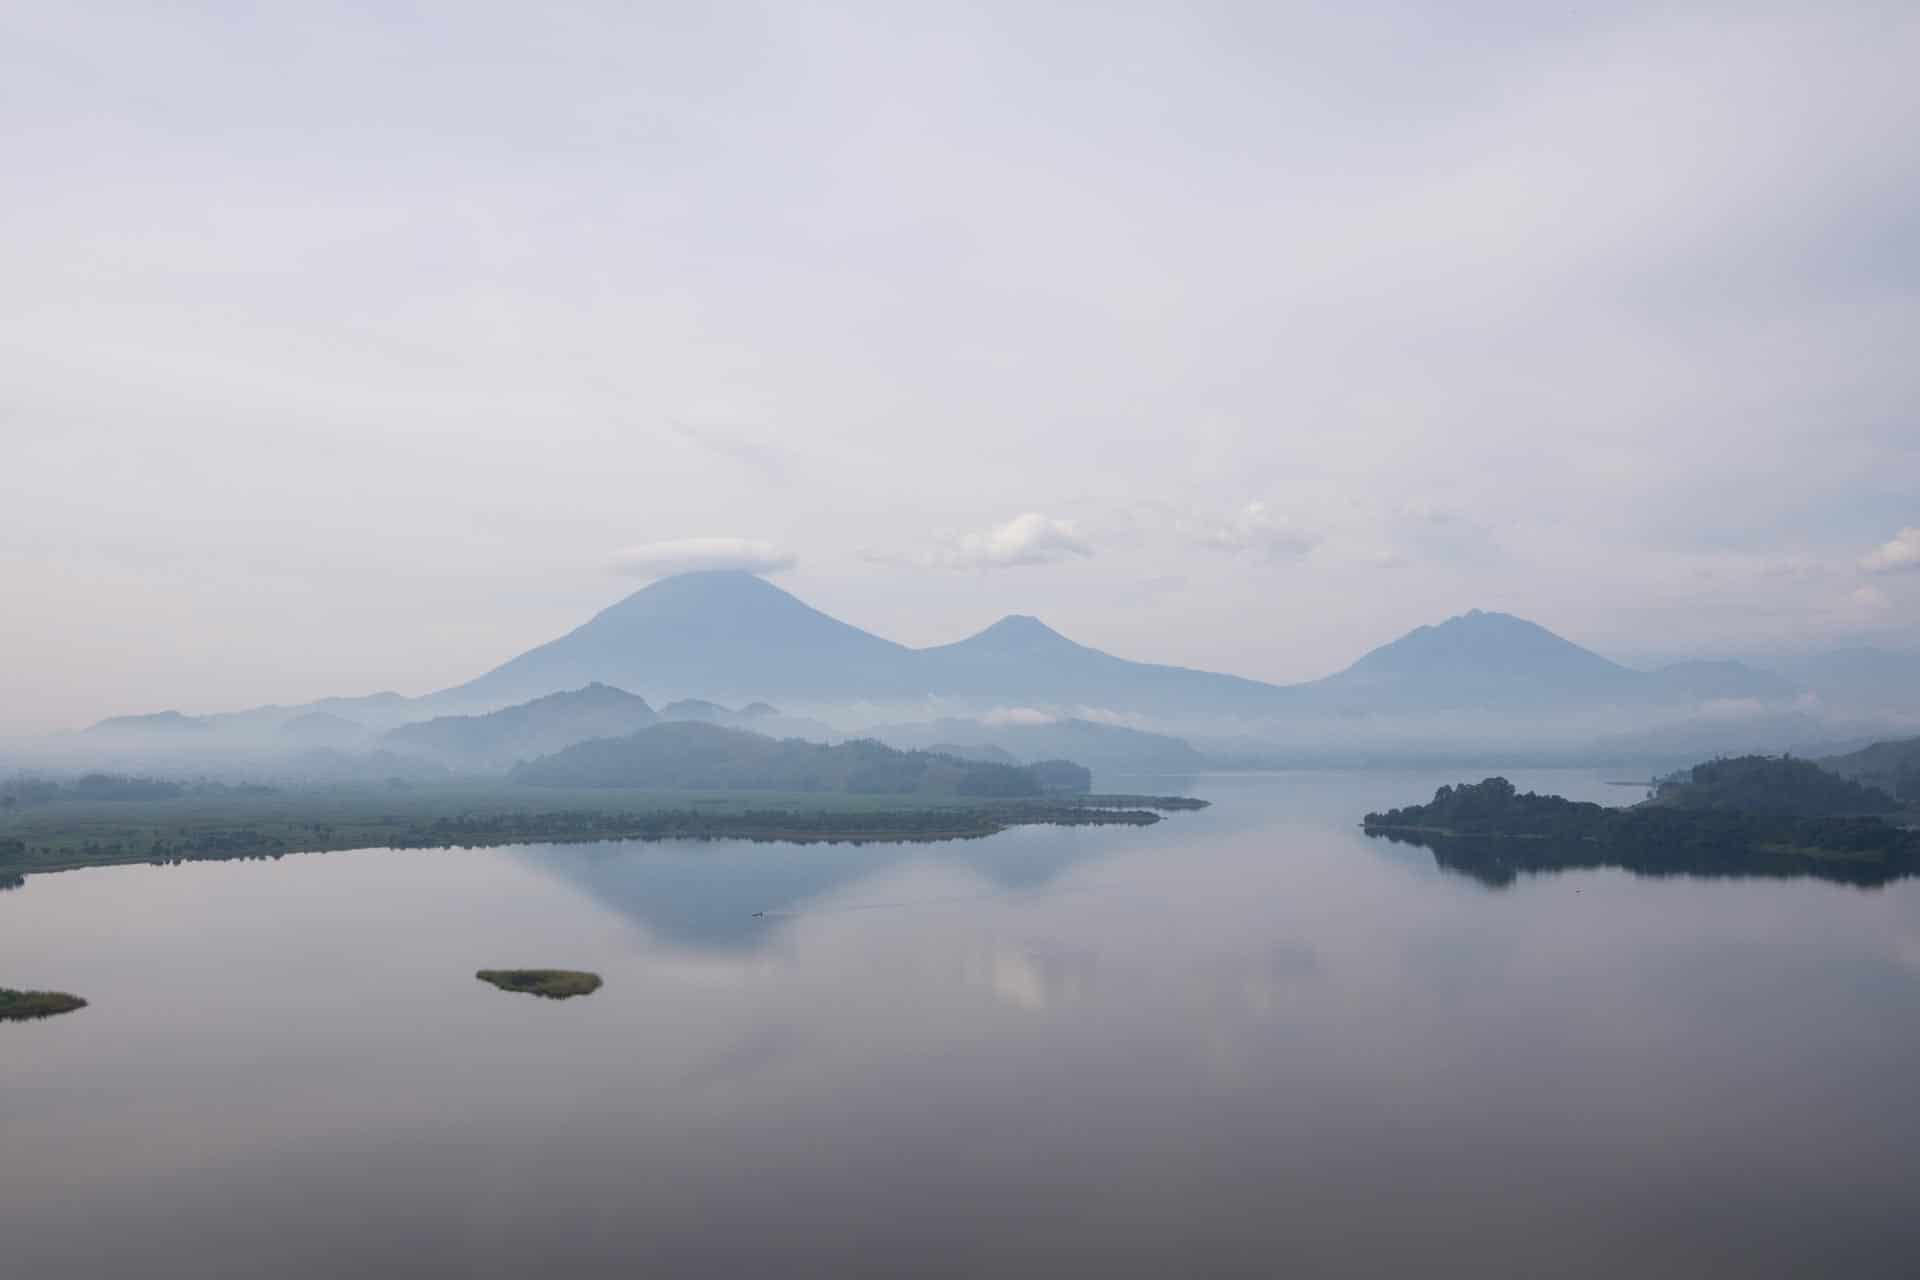 Lake Mutanda in Uganda